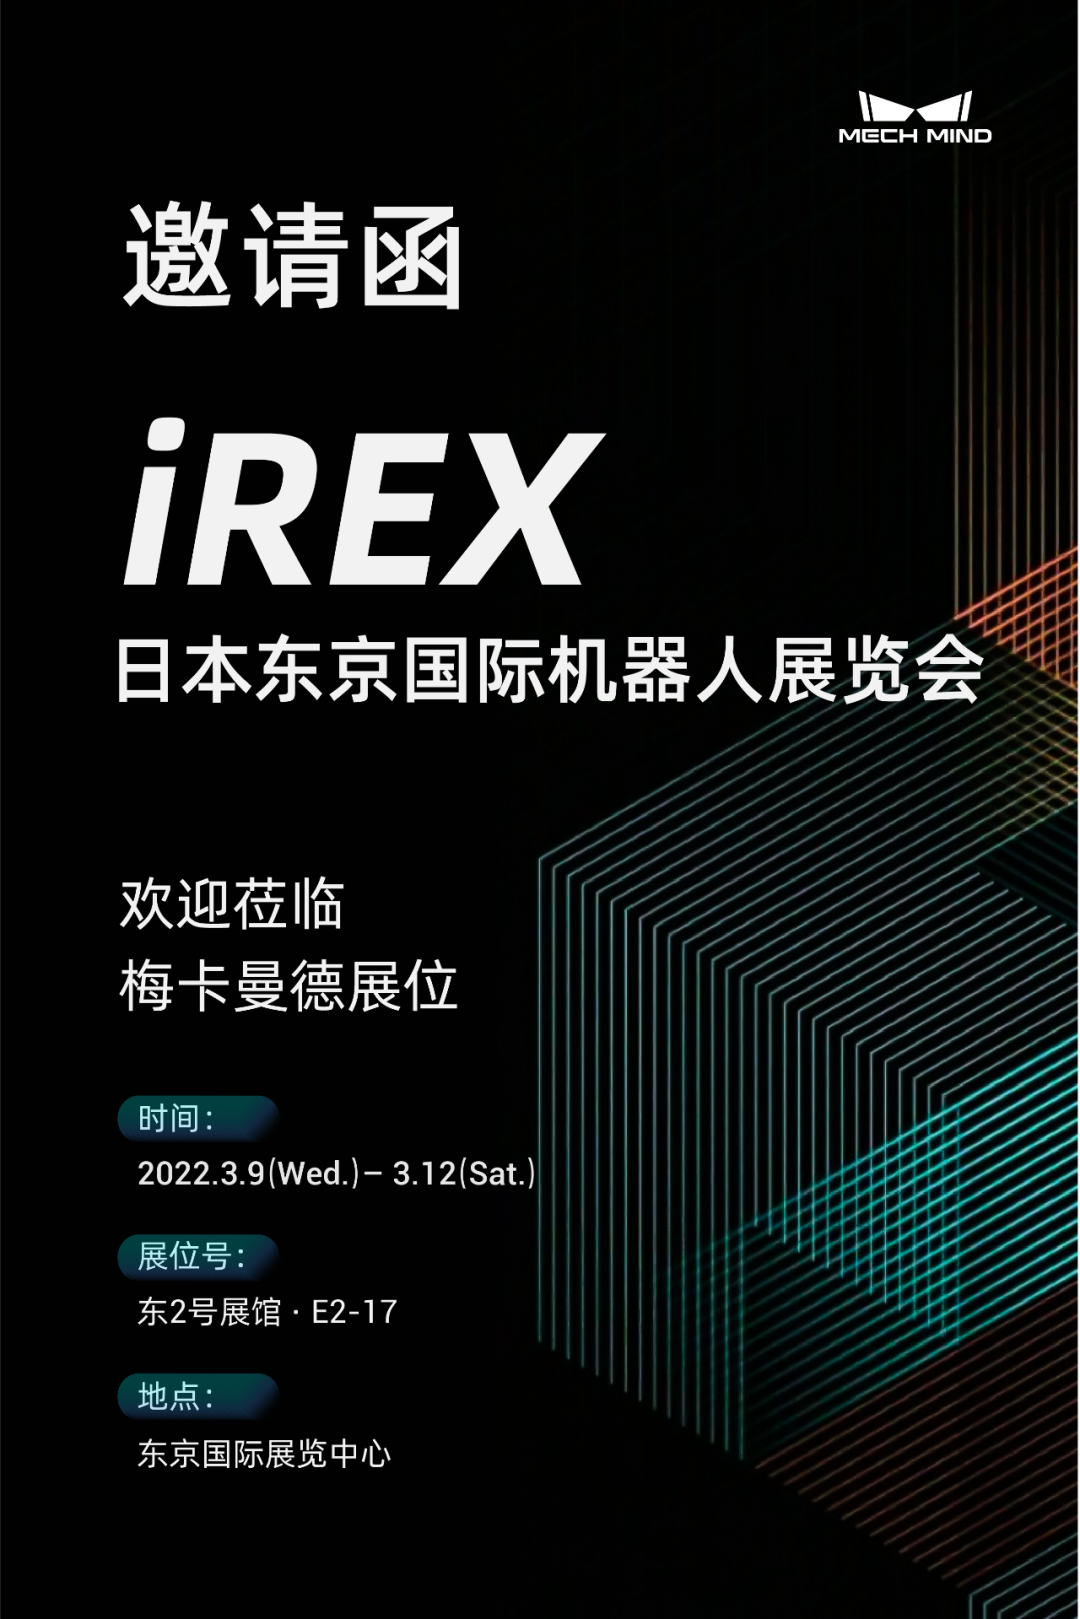 坐标东京！梅卡曼德向您发出国际机器人展览会iREX的参会邀请